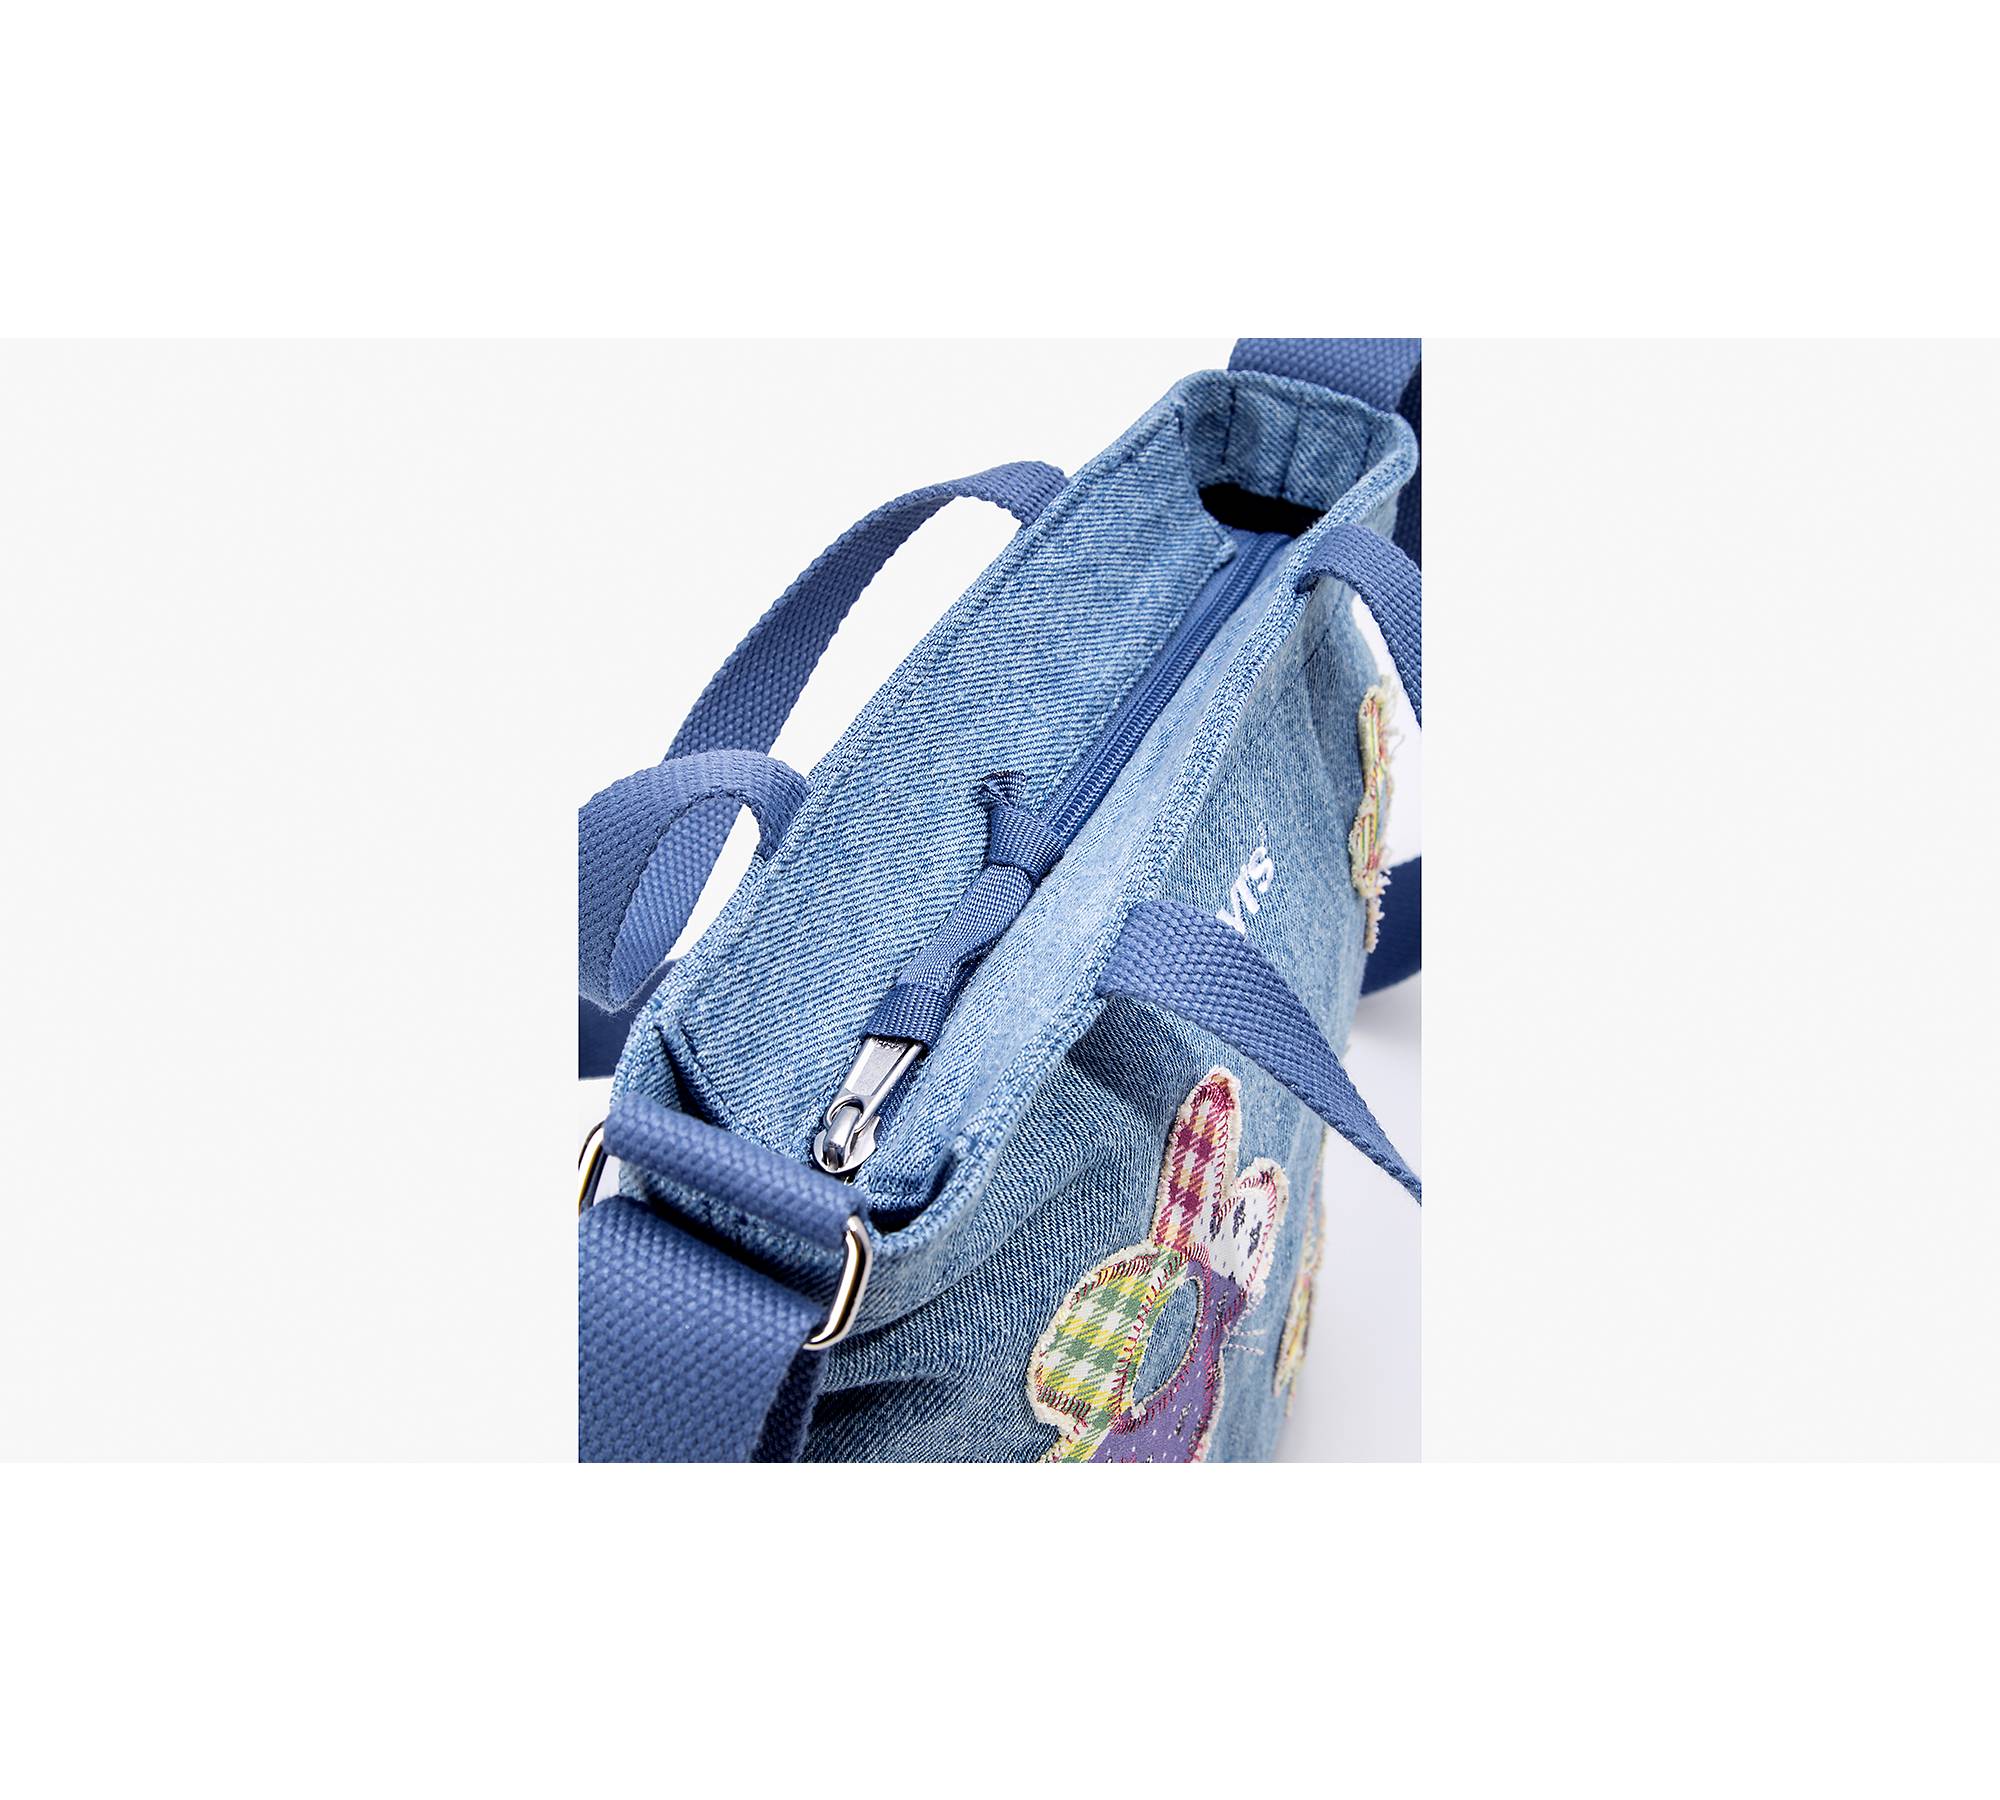 Levi's Mini Icon Tote Bag